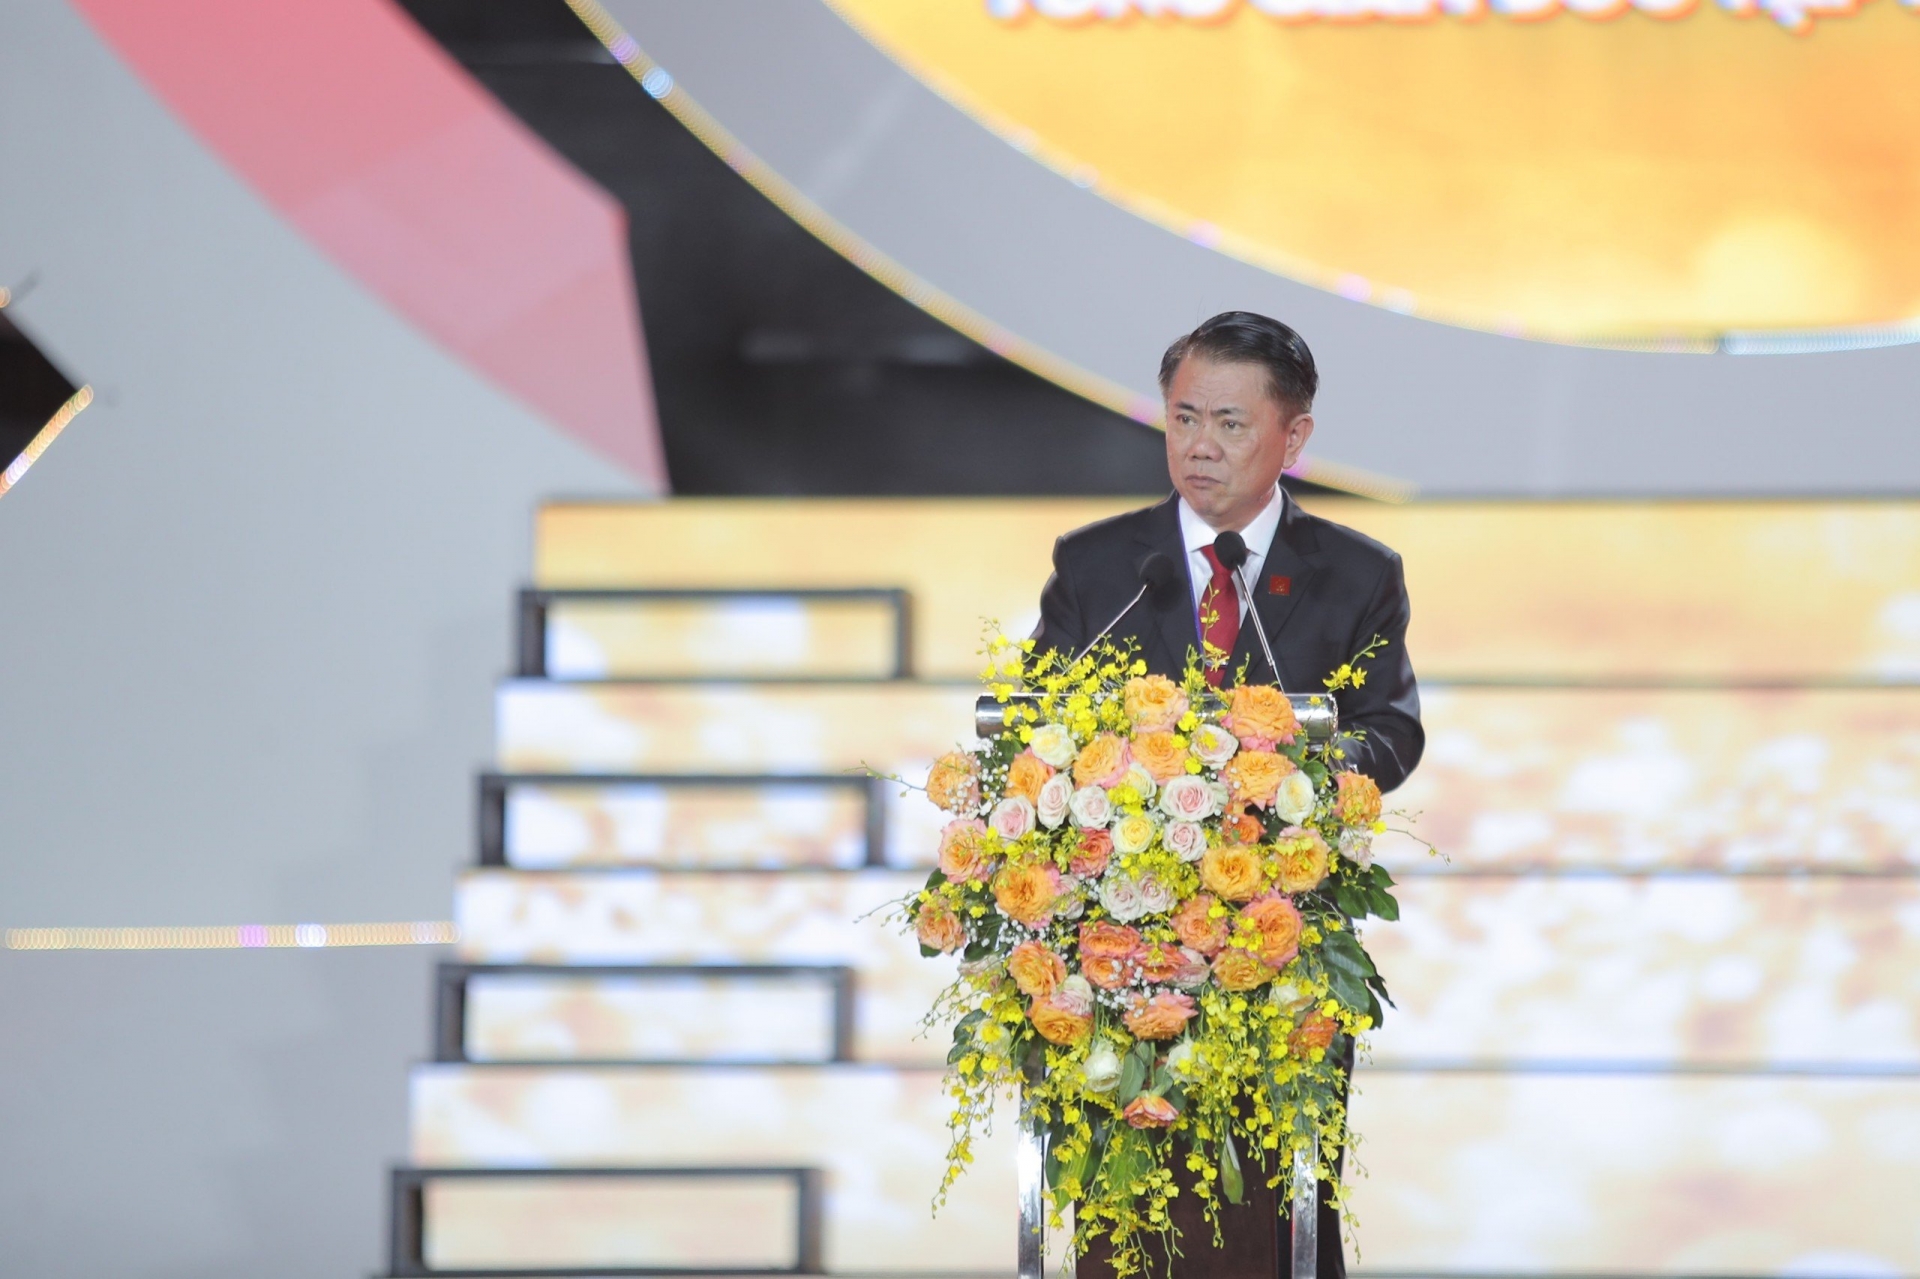 Ông Vũ Văn Thanh - Tổng Giám đốc Tập đoàn Hoa Sen phát biểu tại chương trình
